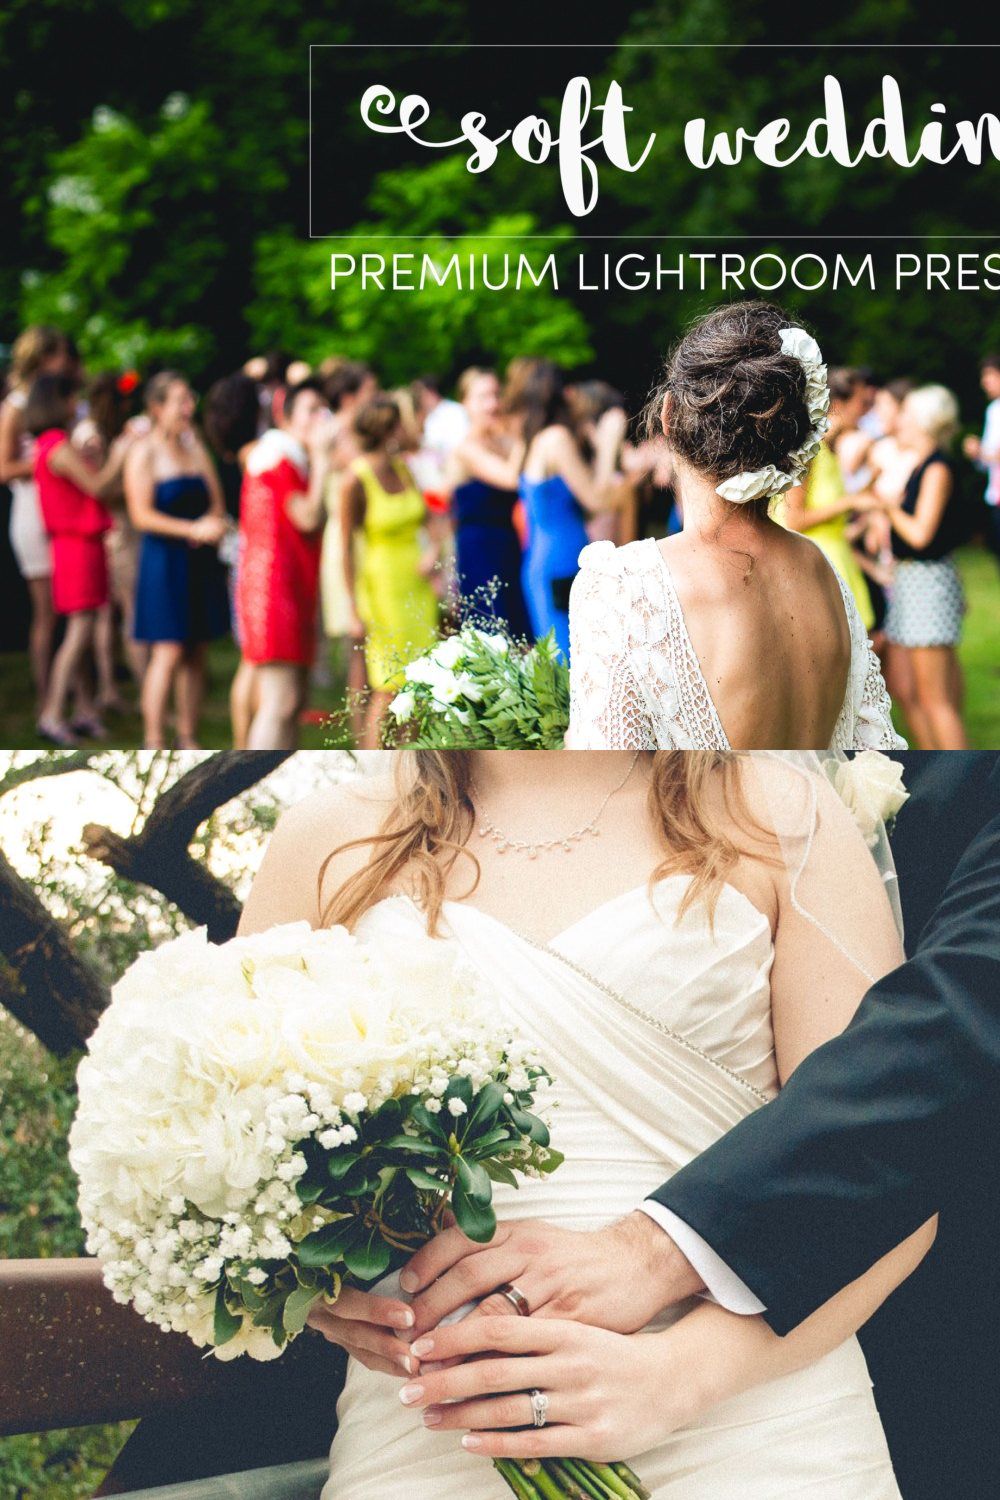 Soft Wedding Lightroom Preset Pack pinterest preview image.